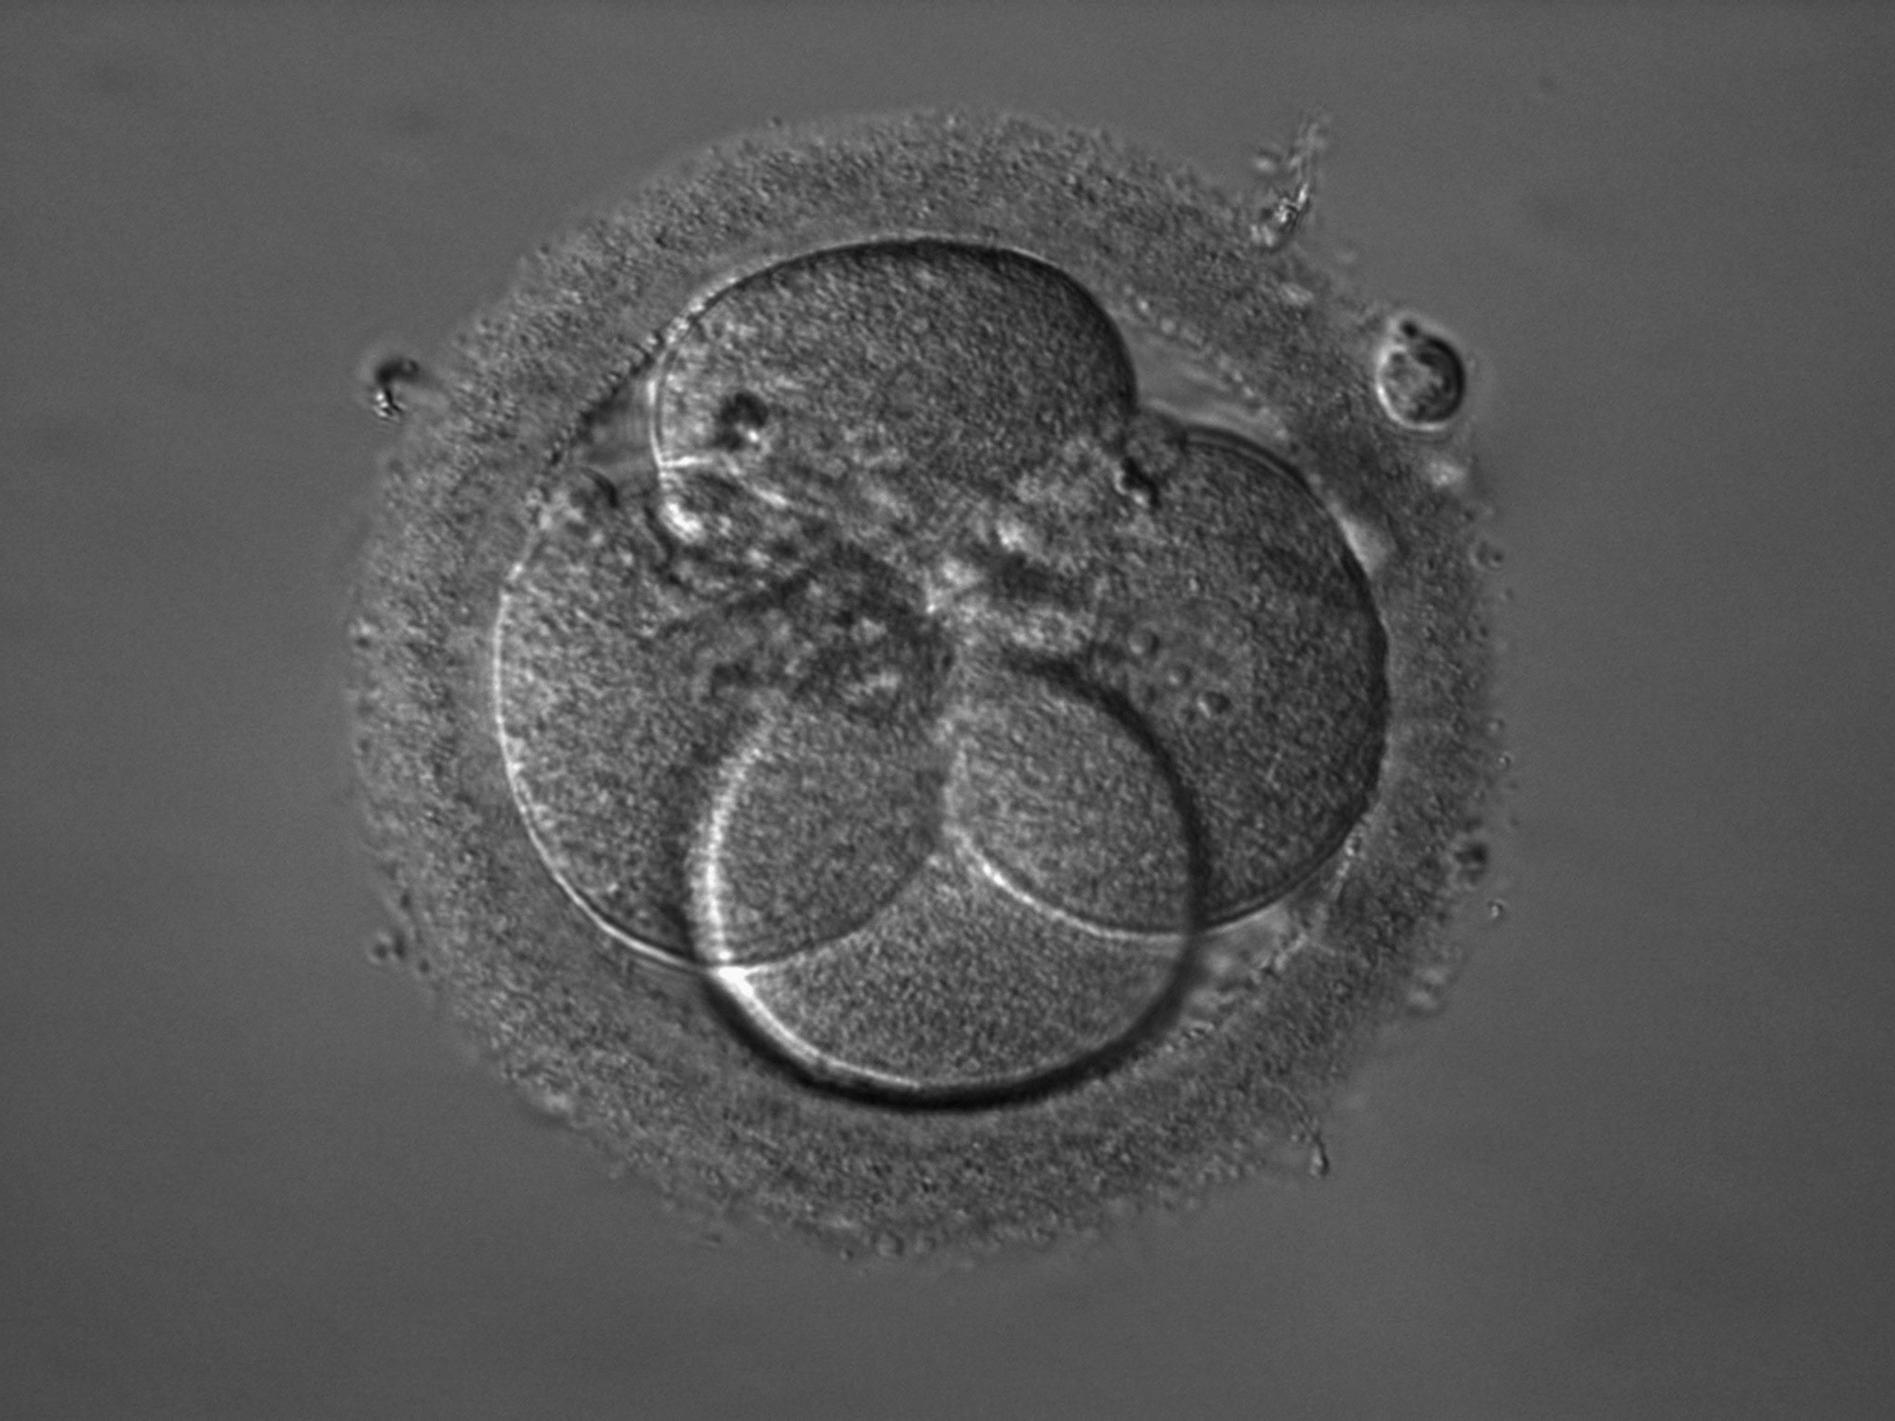 Embryo: Nukleus mit sichtbaren Nukleoli in der rechten Zelle, iHMC